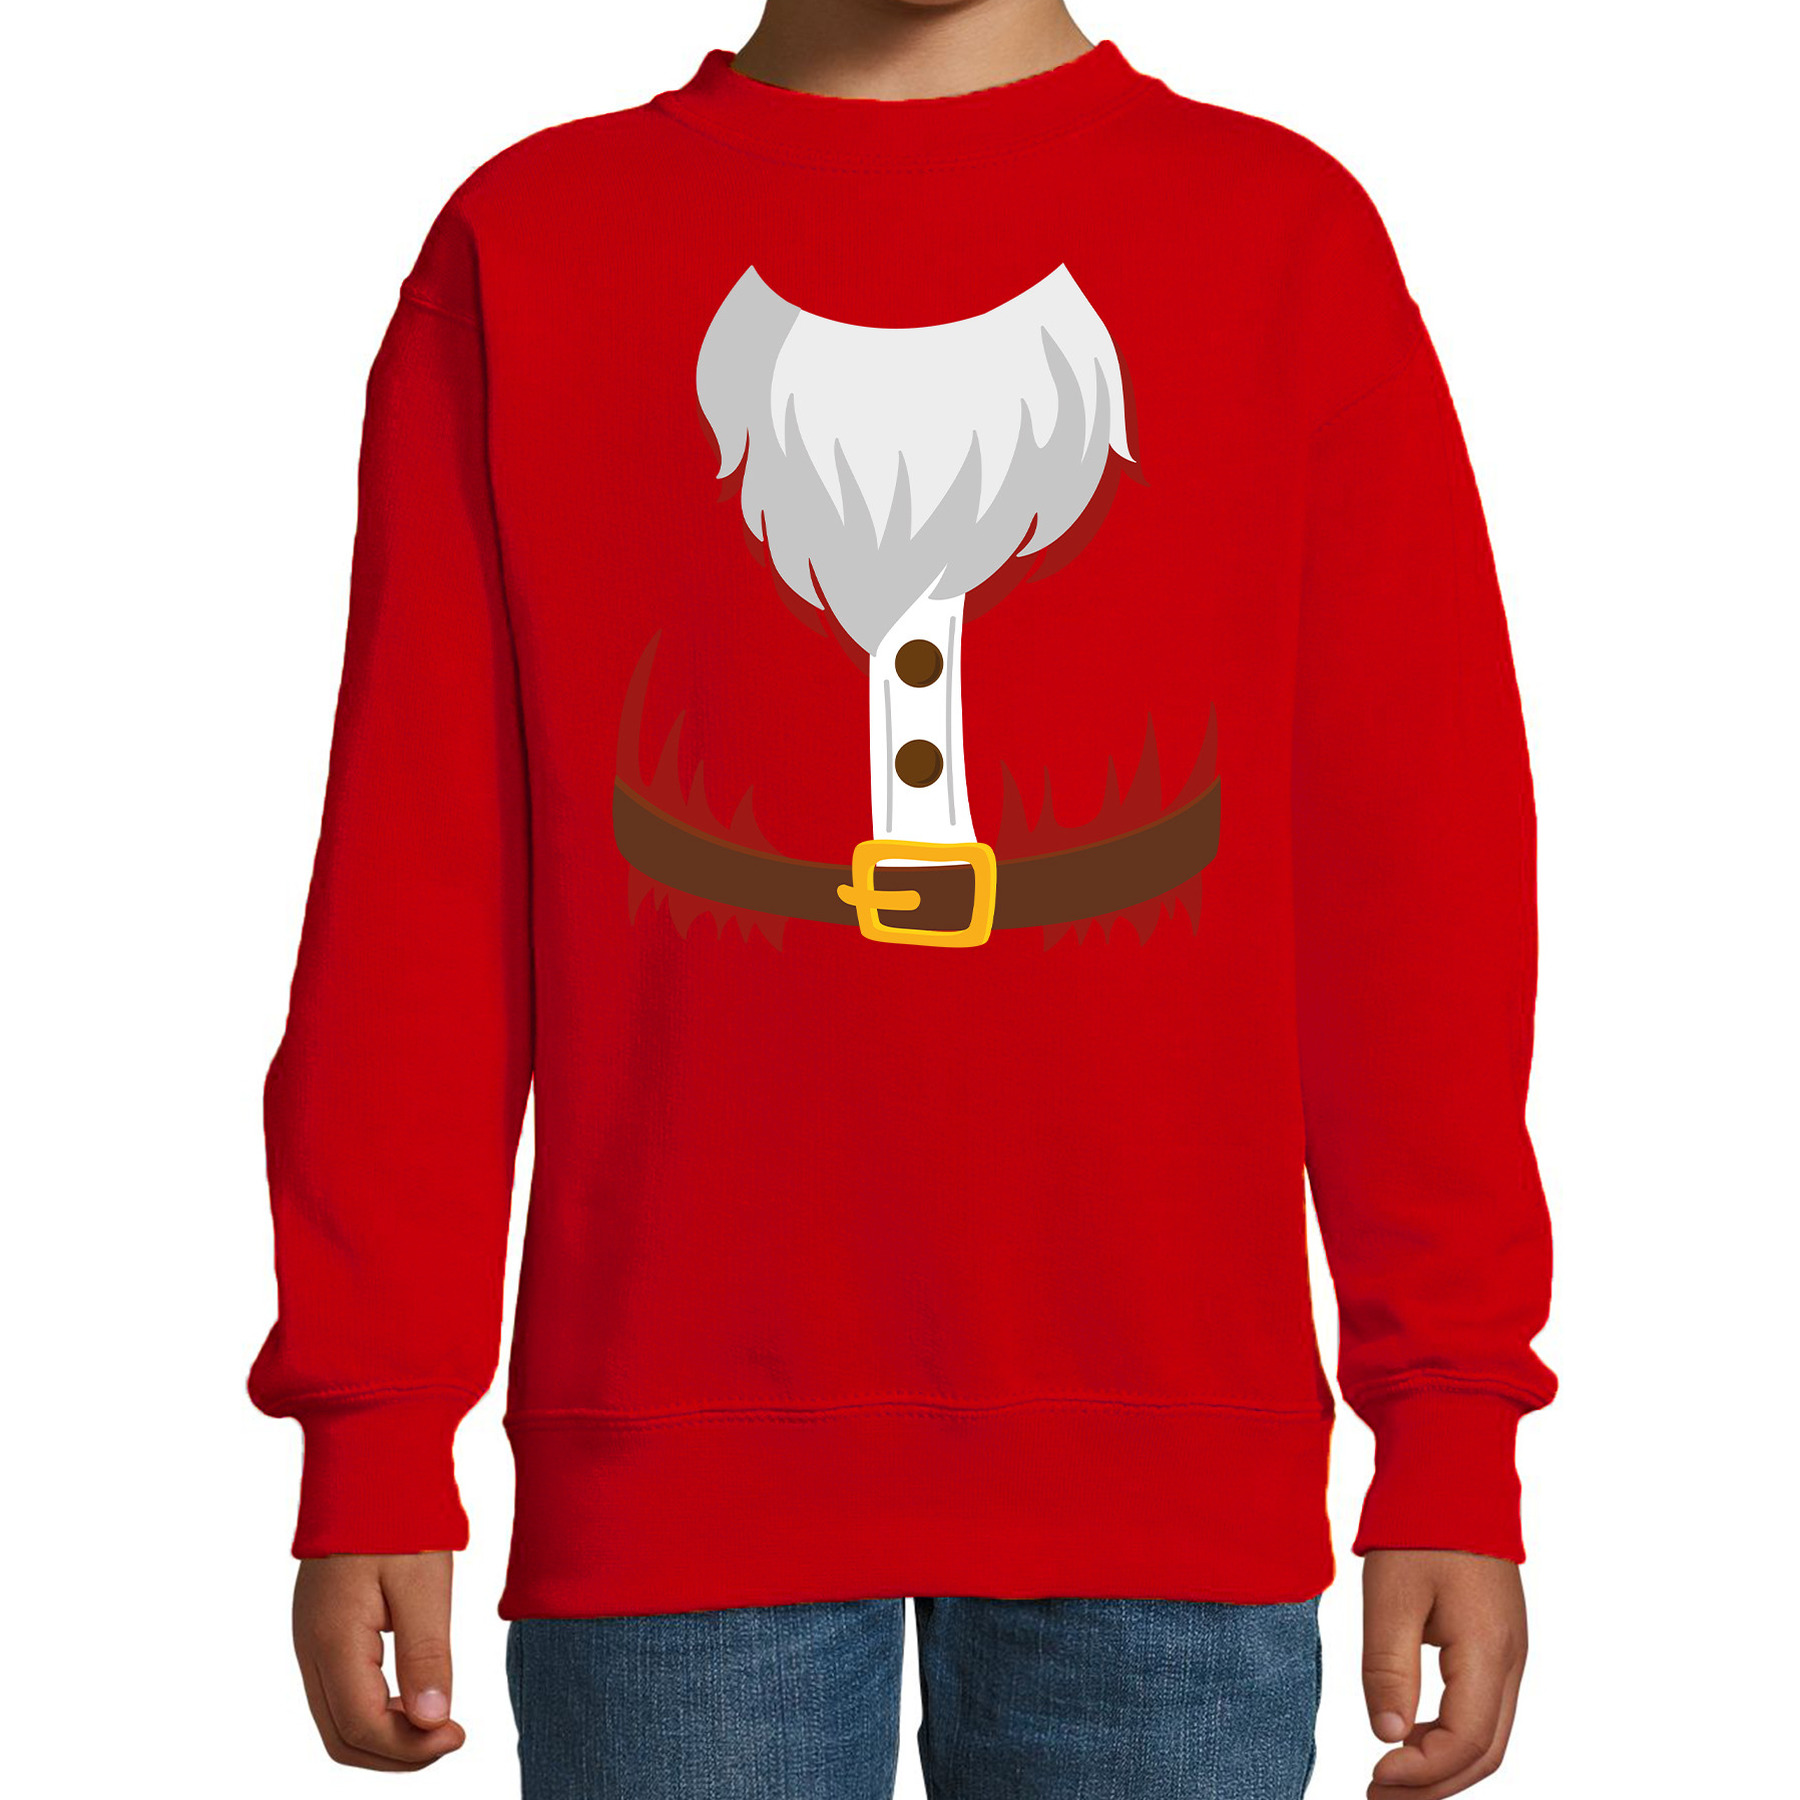 Kerstman kostuum verkleed sweater-trui rood voor kinderen